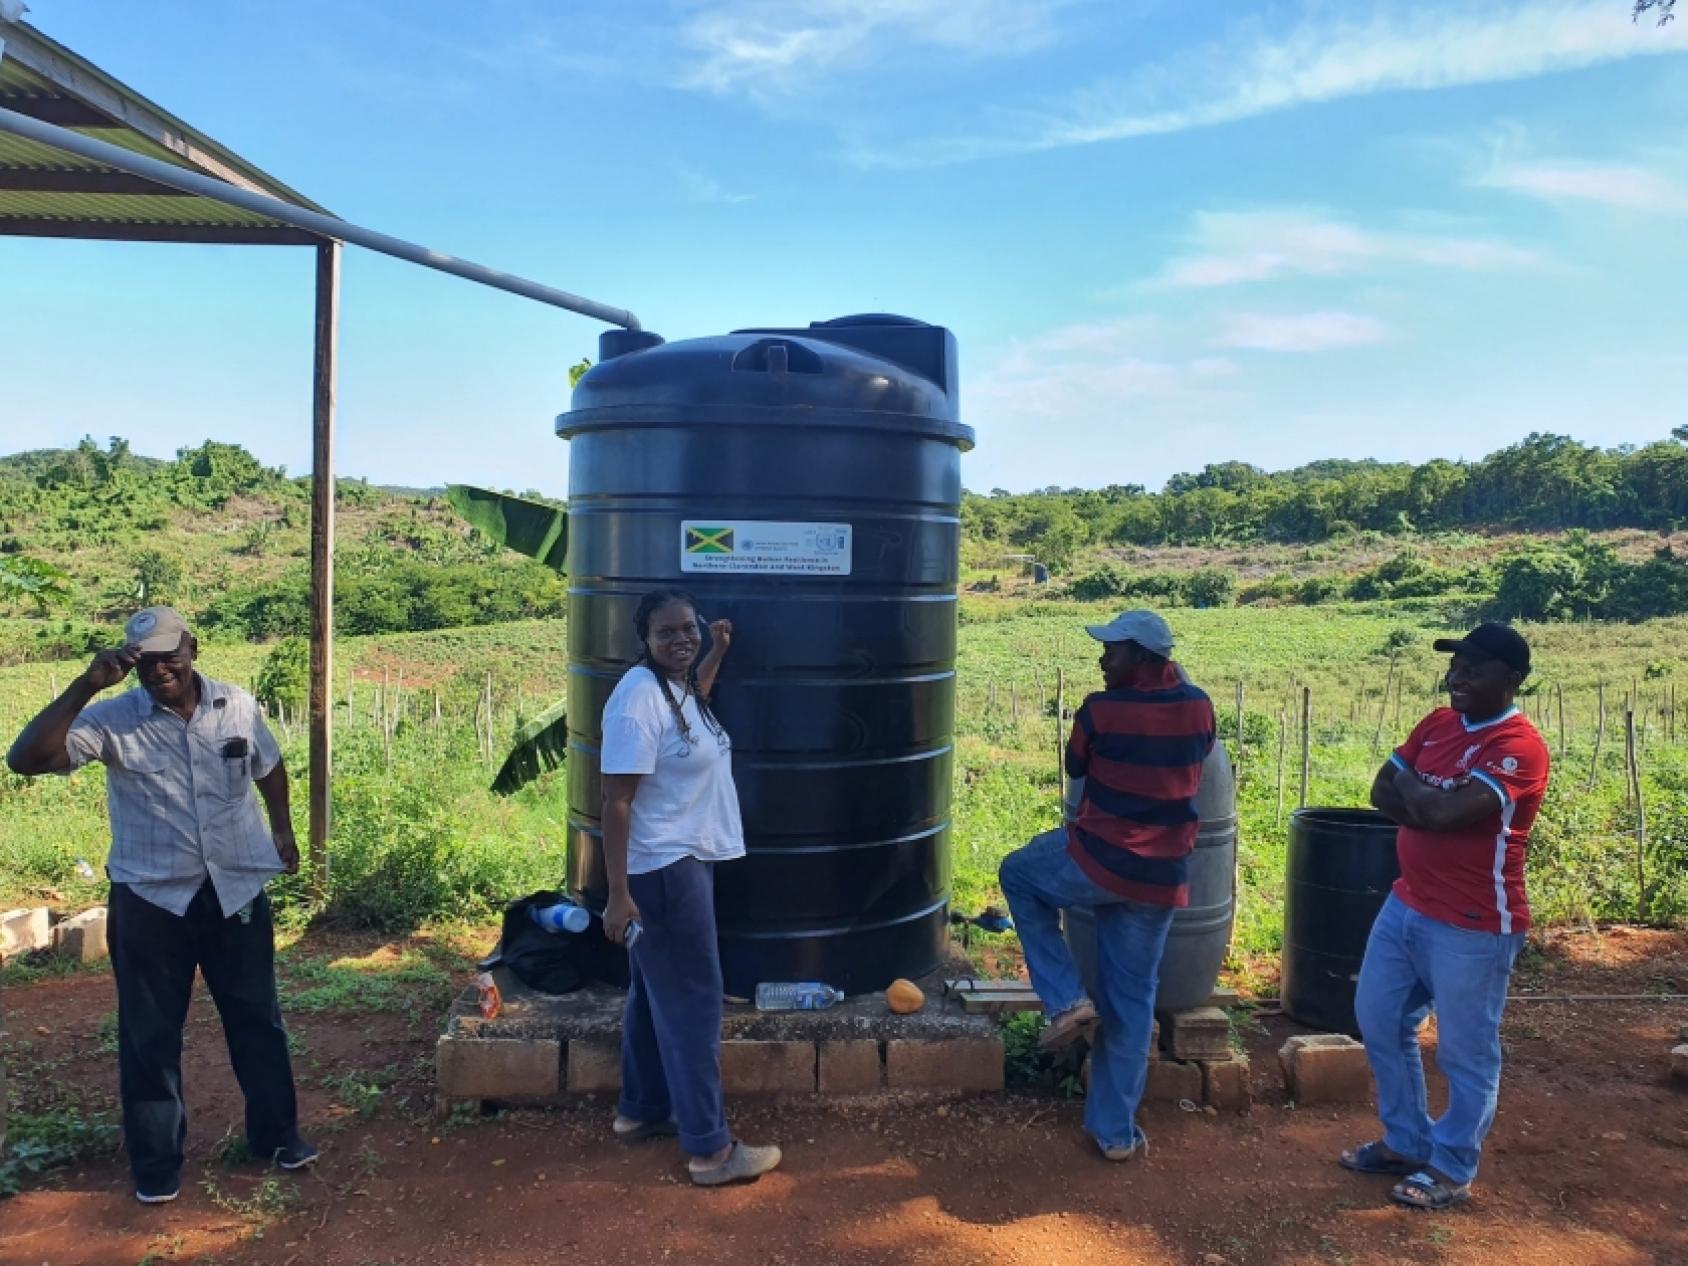 في جامايكا، يقول المزارعون إن أنظمة الري بالتنقيط التي تم تركيبها حديثا تساعد في التغلب على نقص المياه الناجم عن تغير المناخ. تصوير: توماس جوردون مارتن